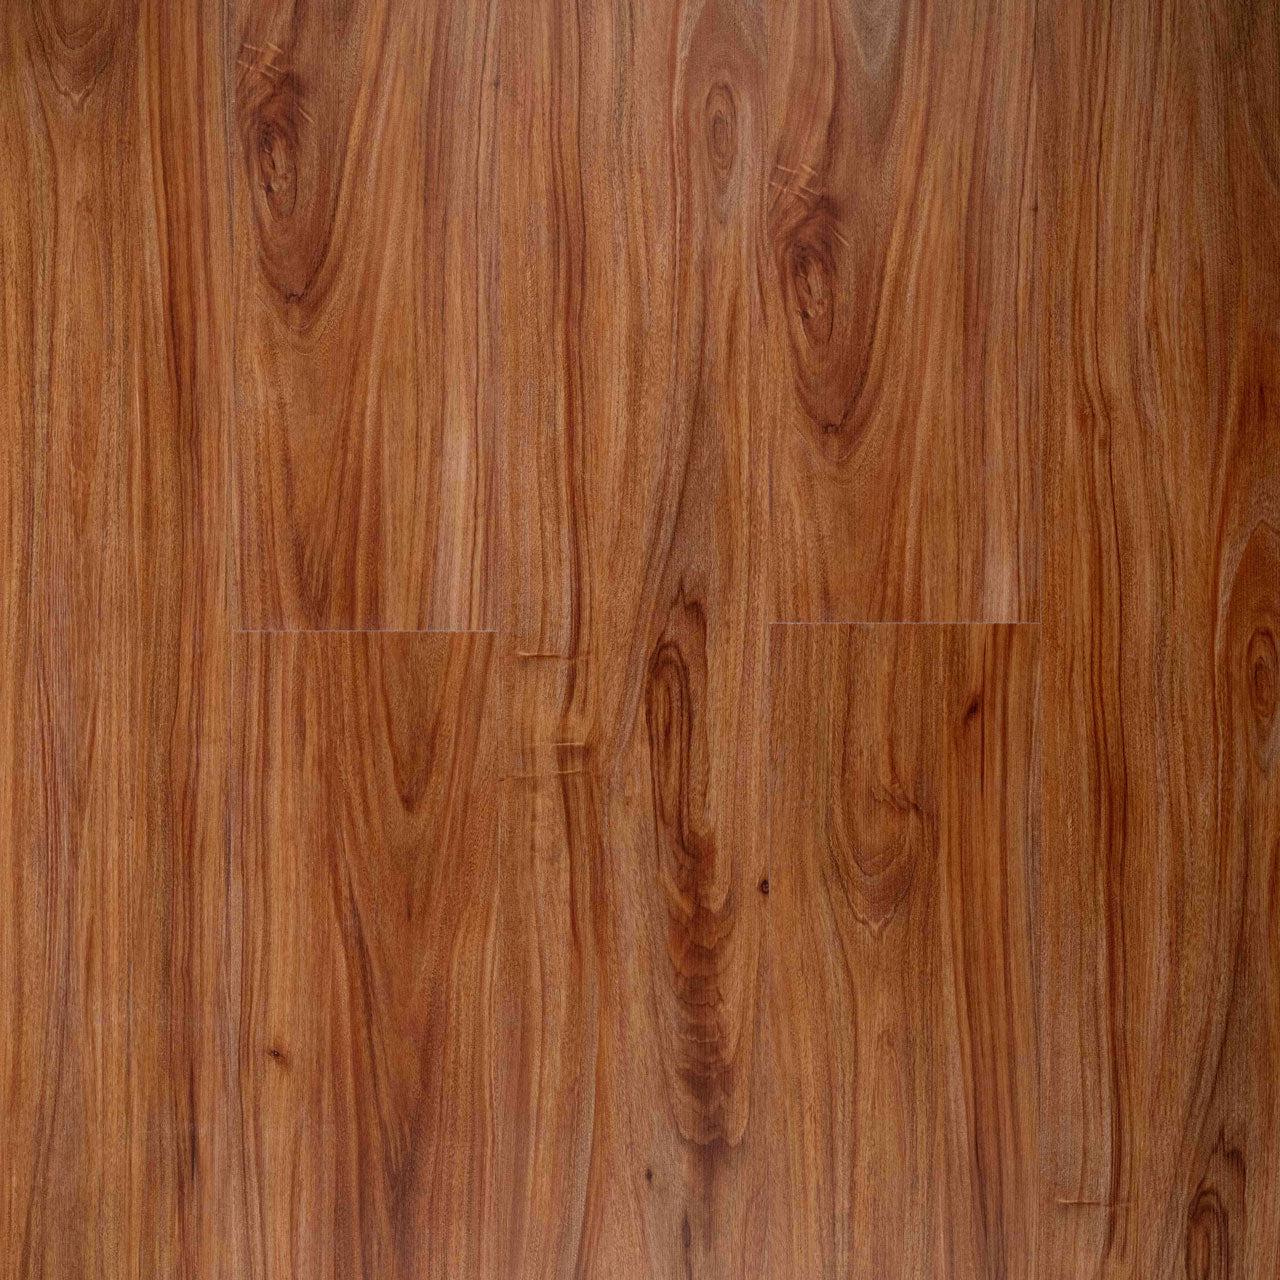 Nroro Flooring - Noble Light Oak Home - Kaneohe Collection - Vinyl Pla –  Best Flooring Honolulu